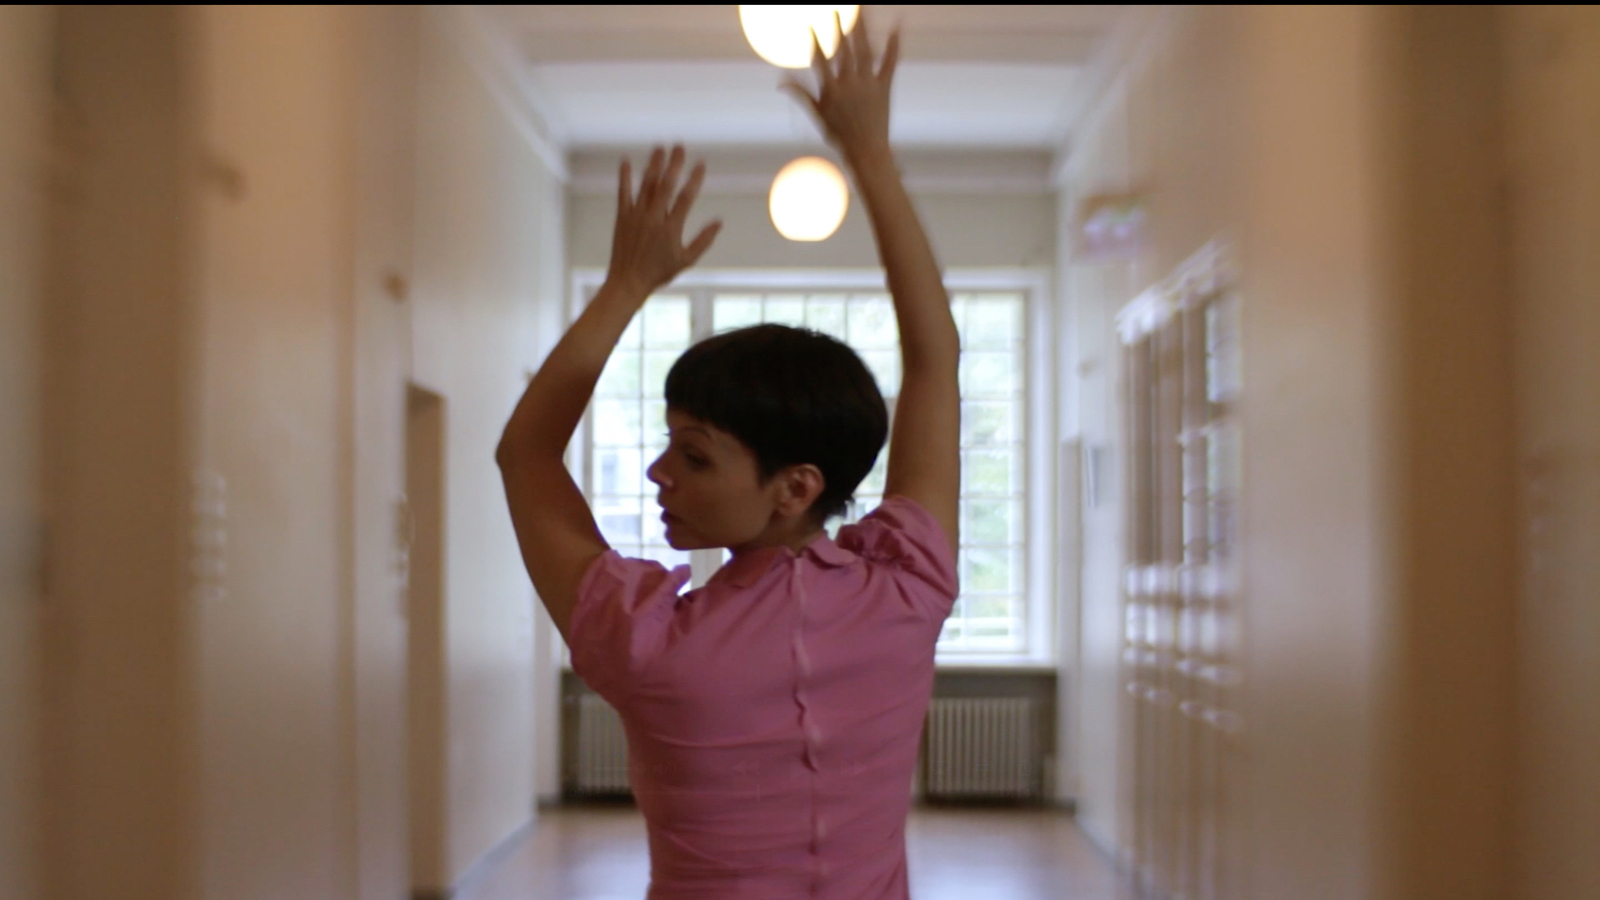 Kuvassa on Elli Isokoski tanssimassa käytävässä kädet ylhäällä ja hän on selin kasvot sivuttain vasemmalle. Kuva on puolivartalokuva.